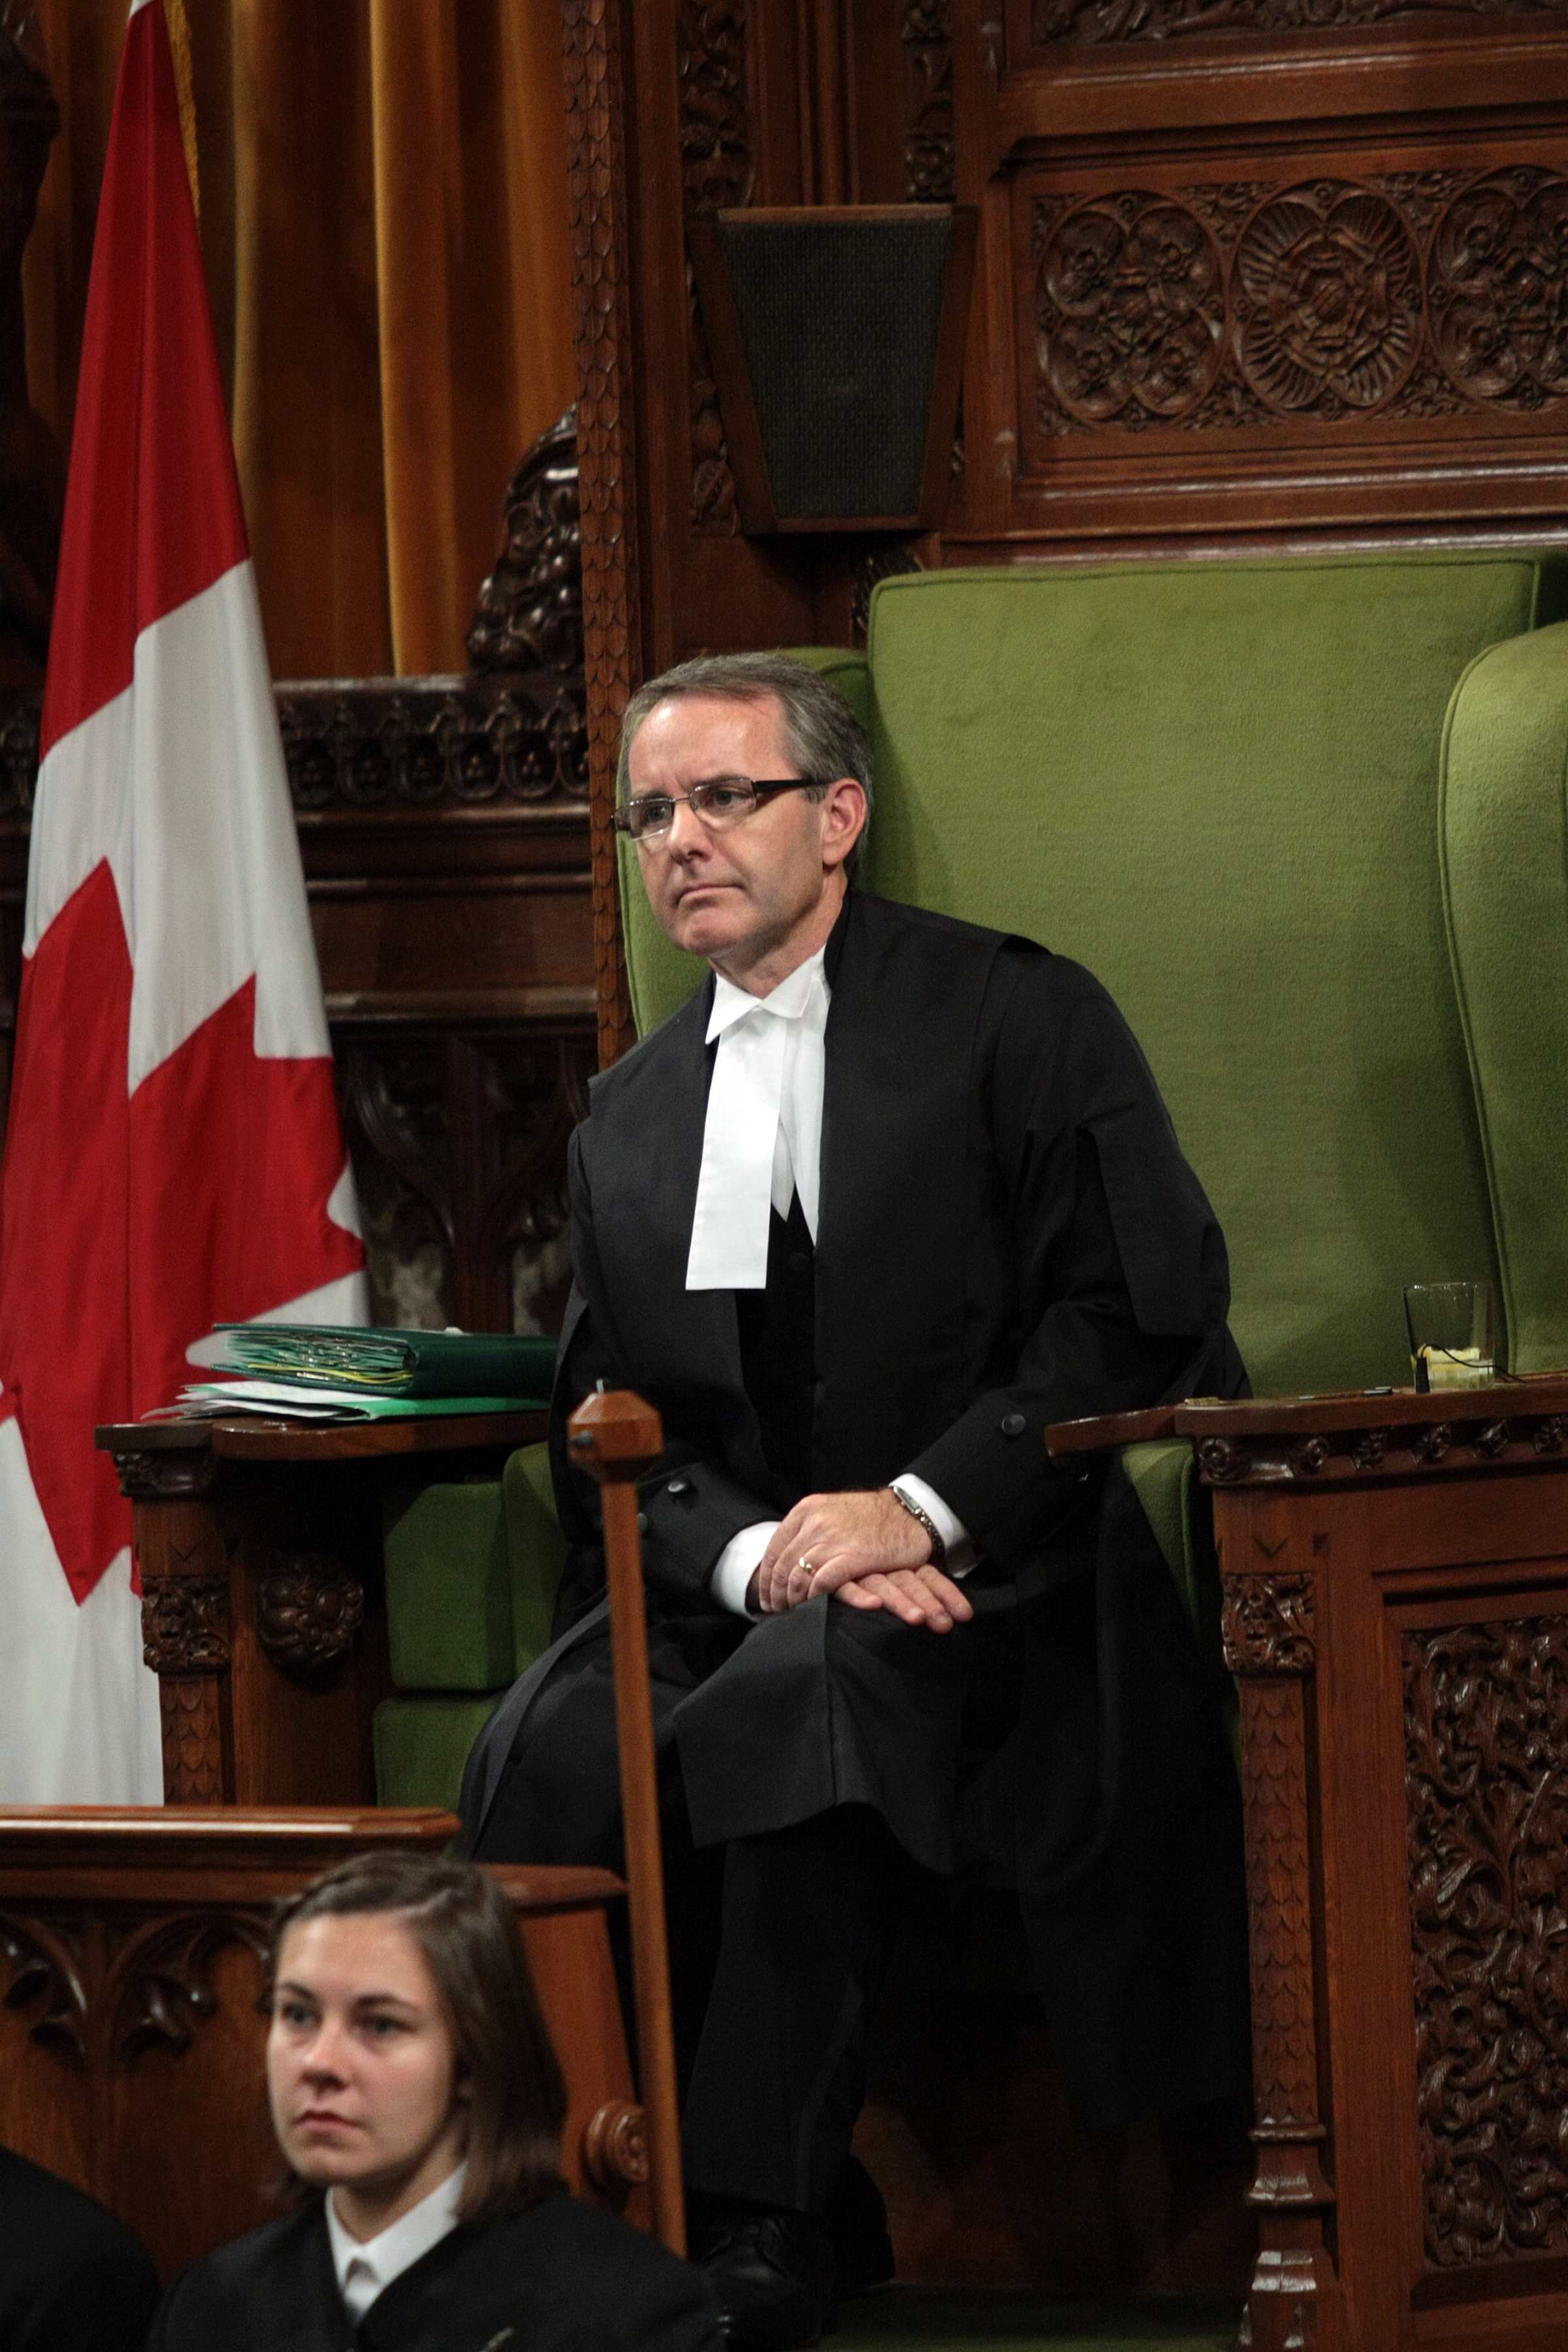 Deputy Speaker Bruce Stanton in the House of Commons